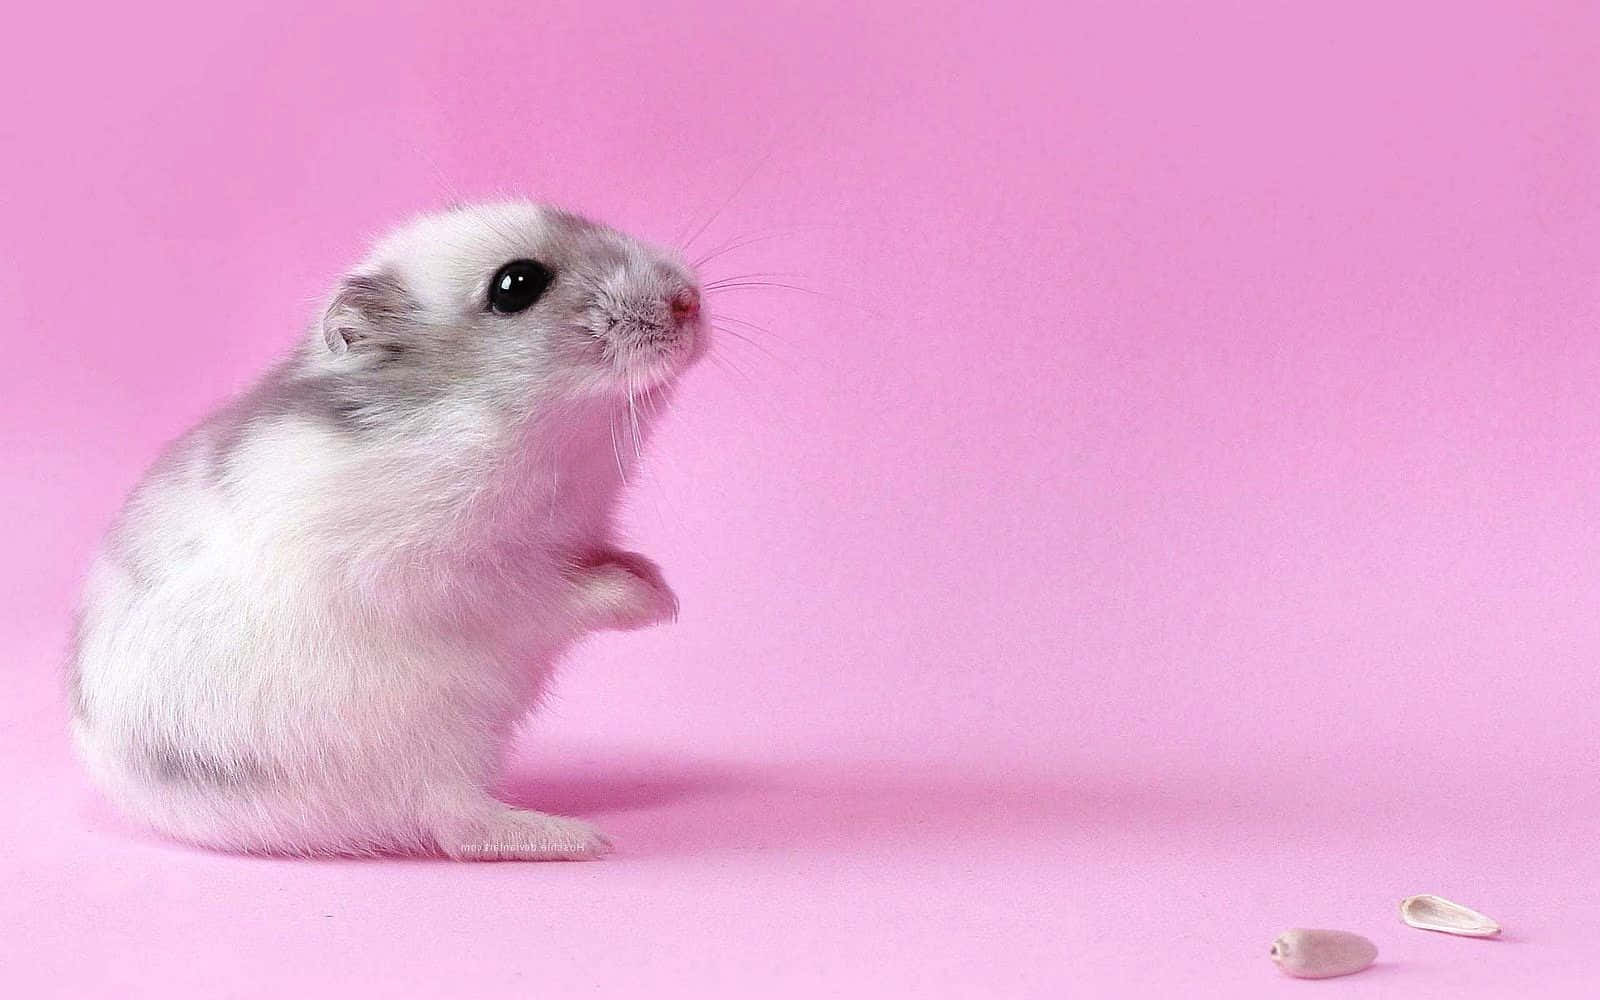 Umpequeno Hamster Branco Está De Pé Em Um Fundo Rosa De Papel De Parede Do Computador Ou Celular. Papel de Parede